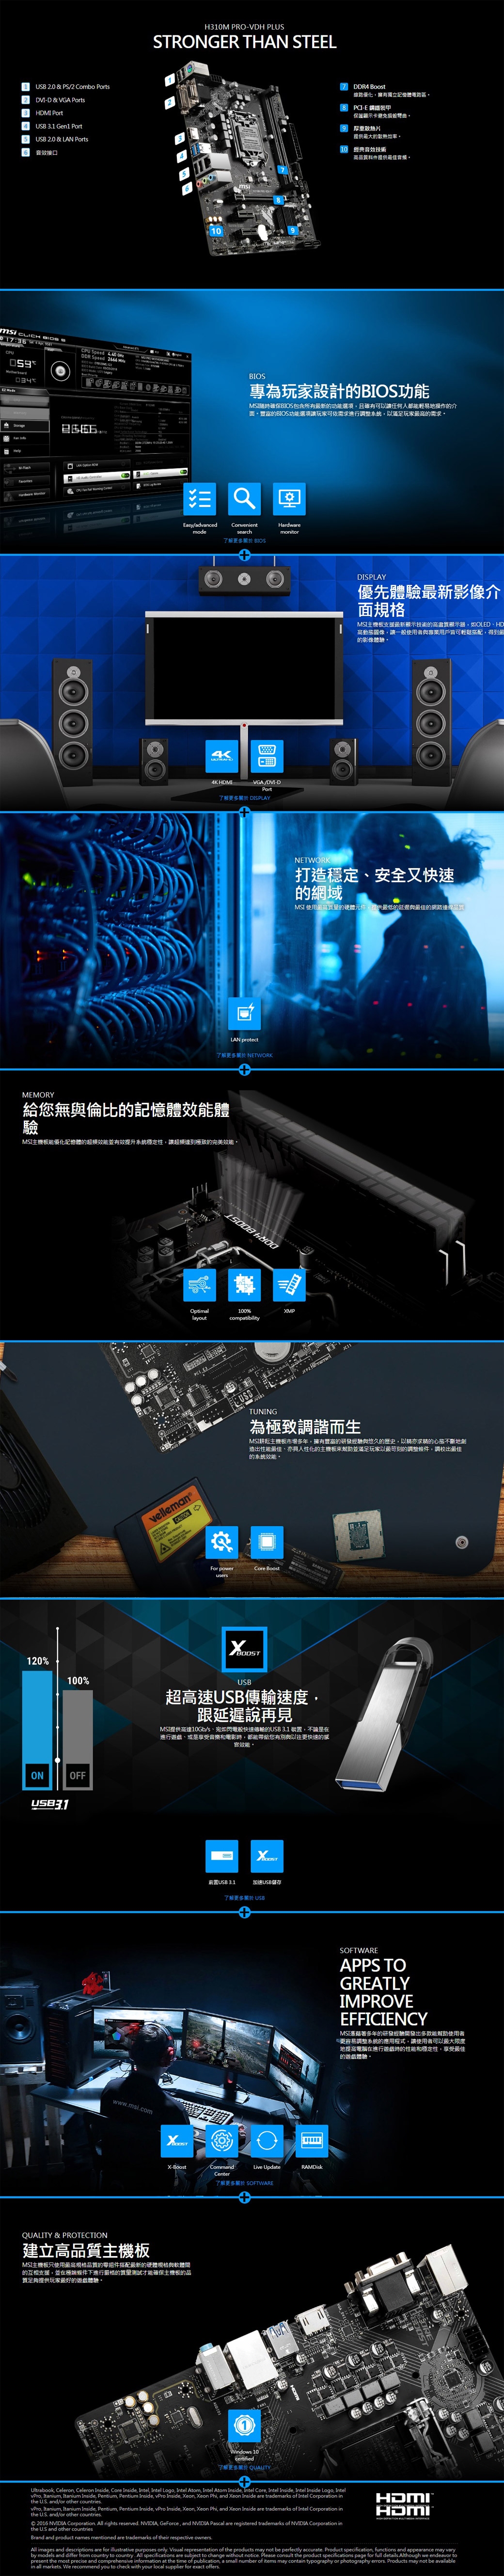 Intel i7-9700 + MSI H310M PRO-VDH PLUS 組合套餐